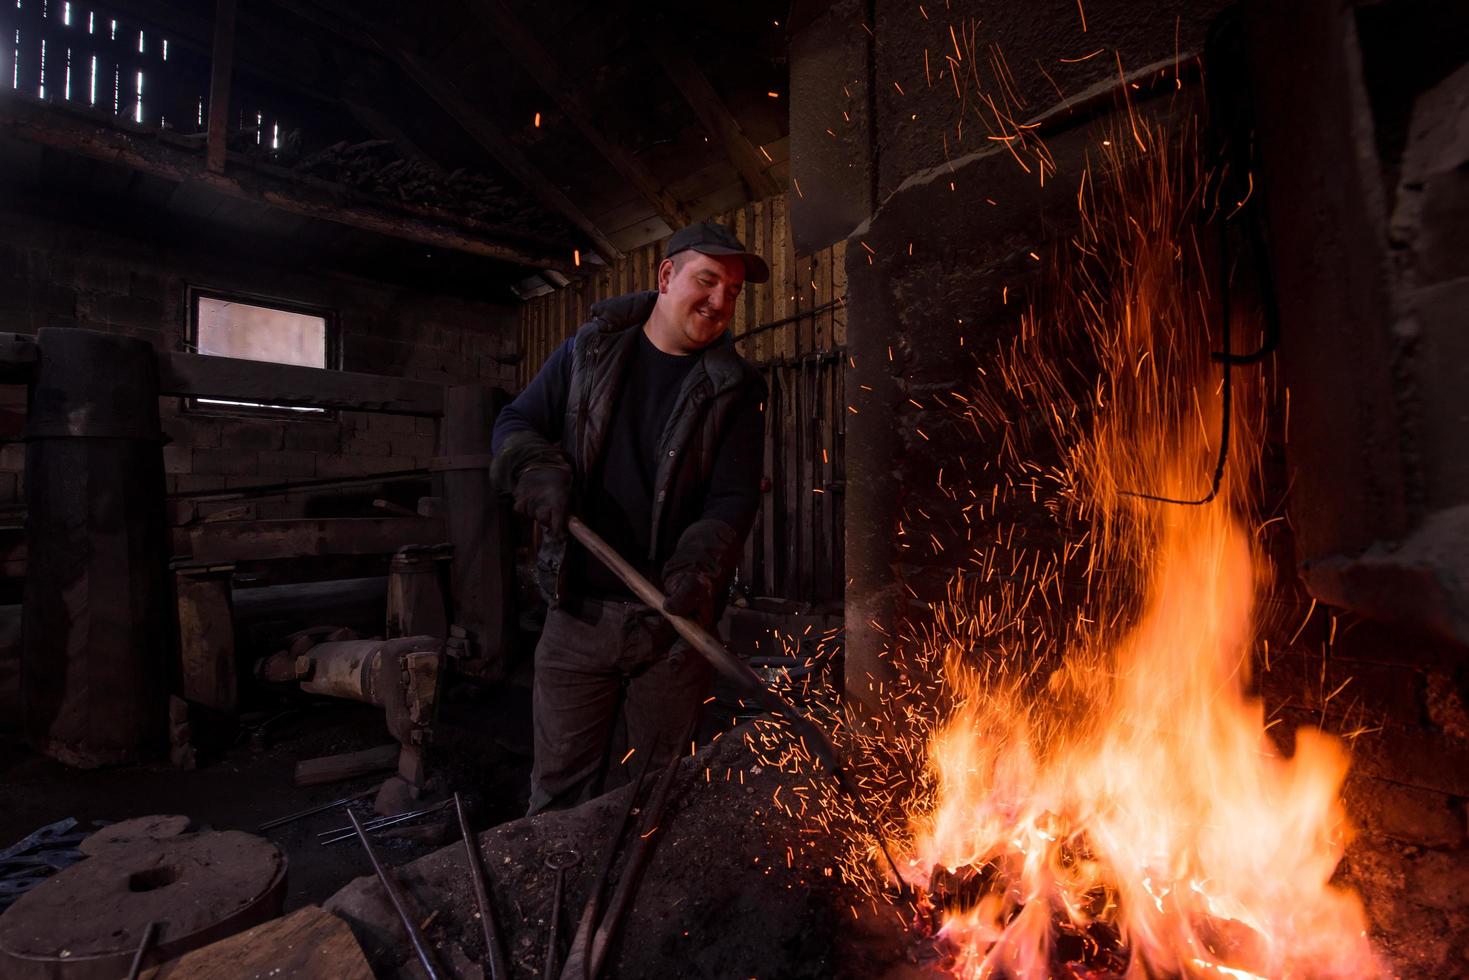 jeune forgeron traditionnel travaillant avec feu ouvert photo